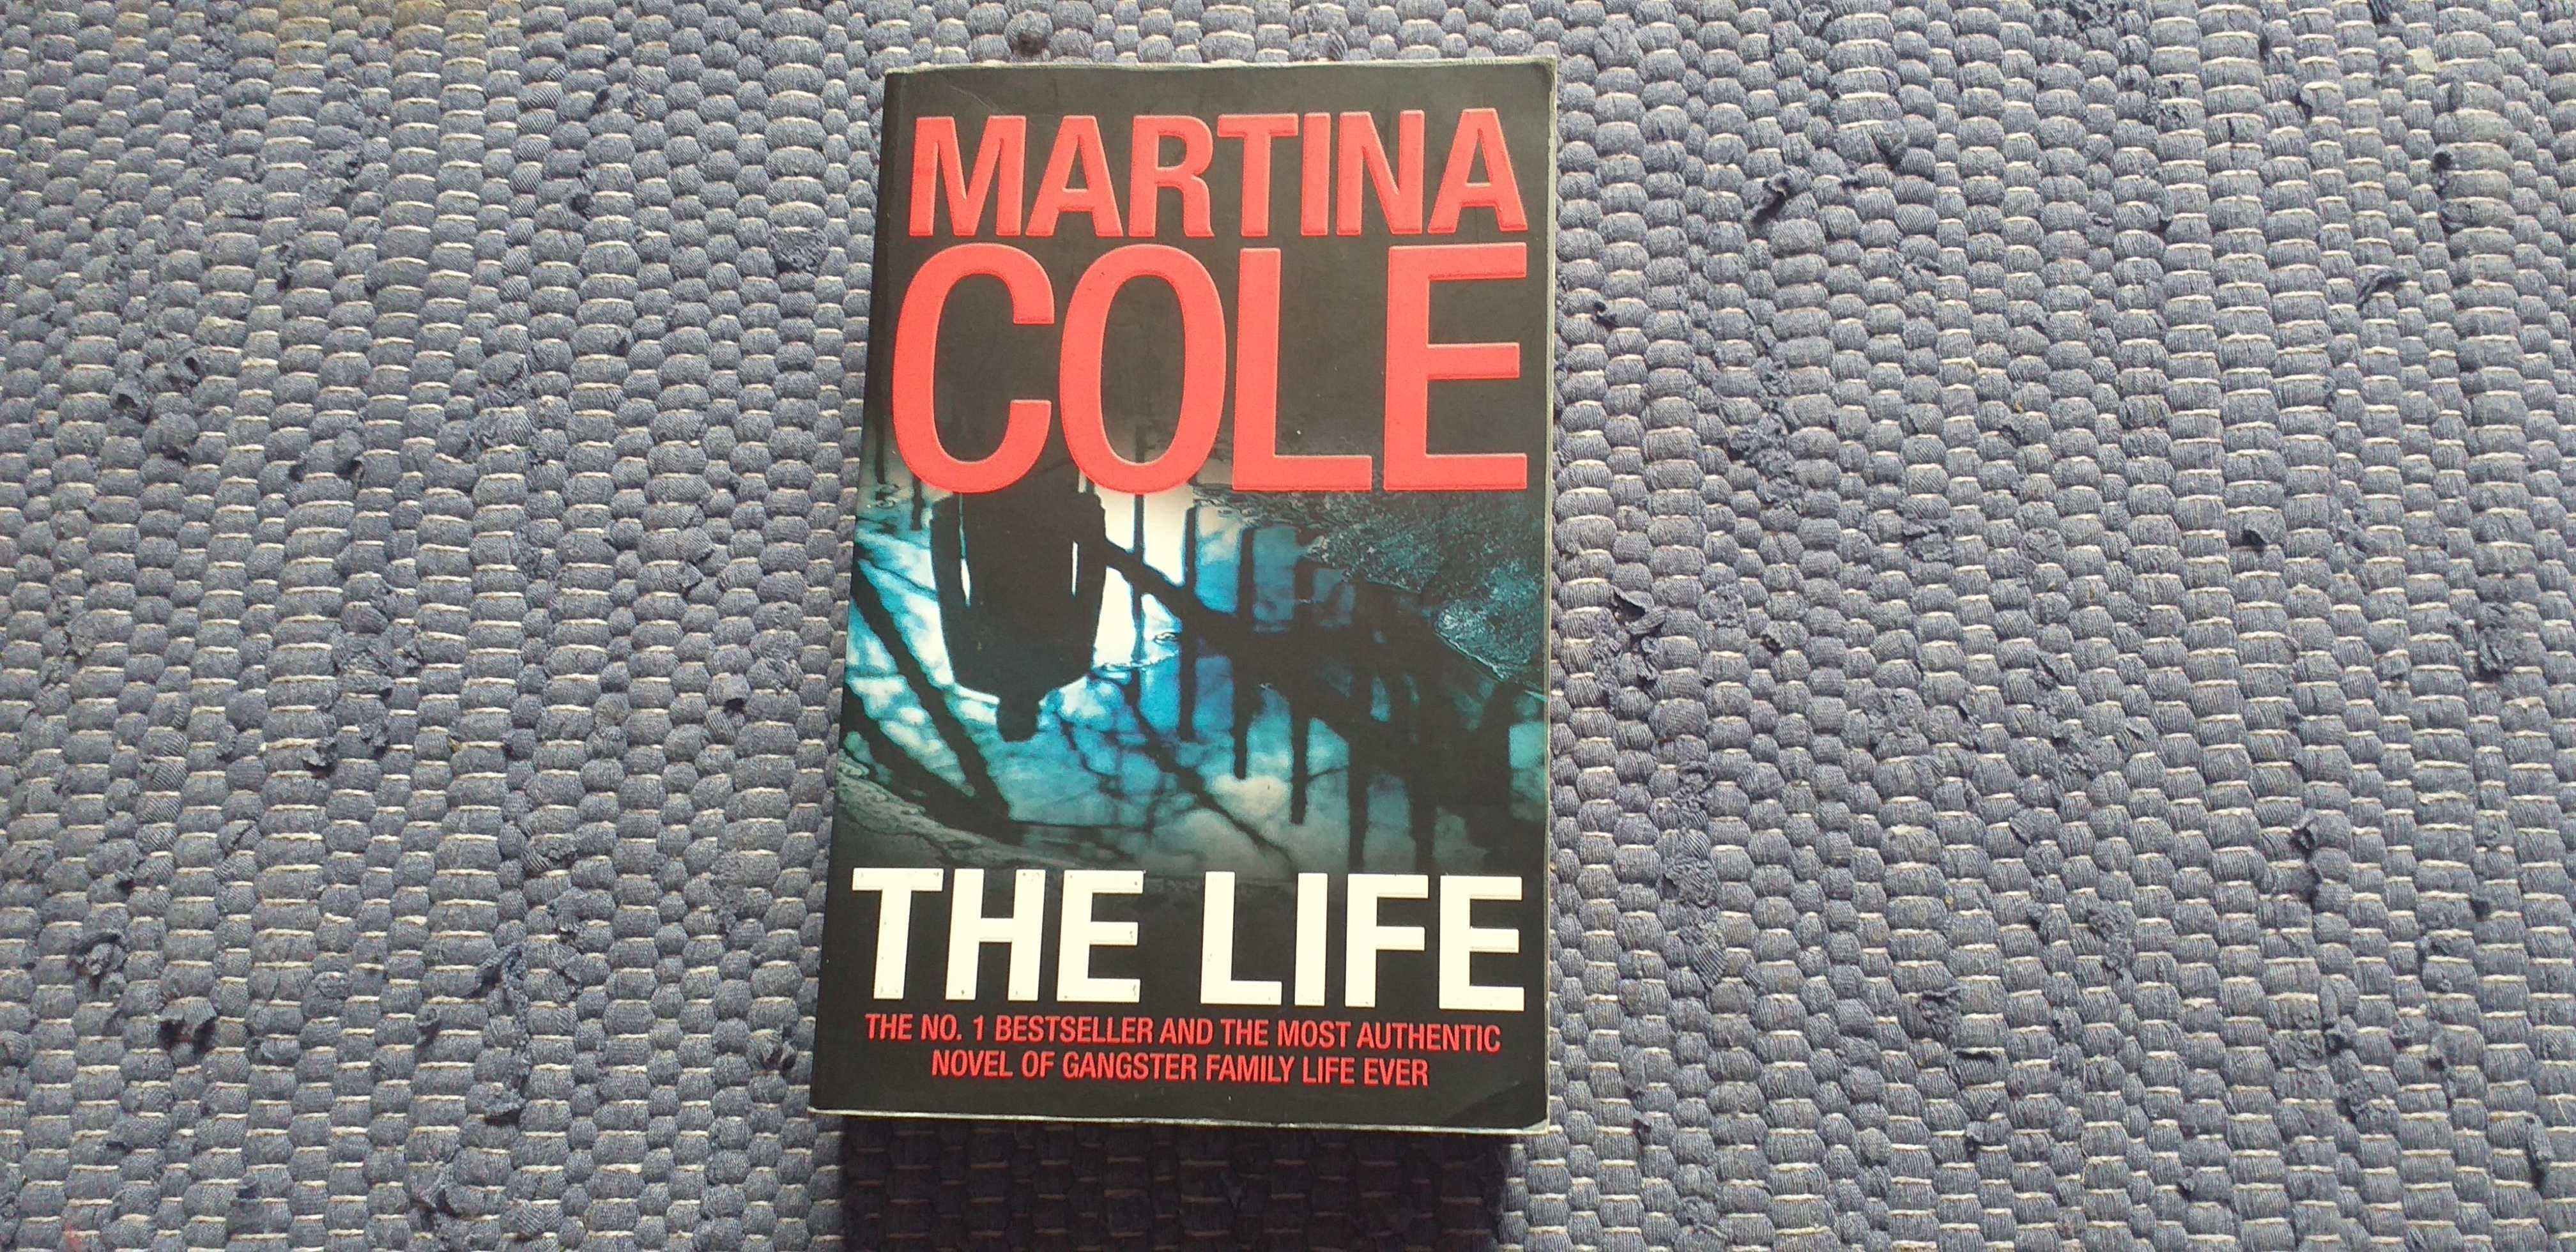 Martina Cole - The Life - portes incluidos